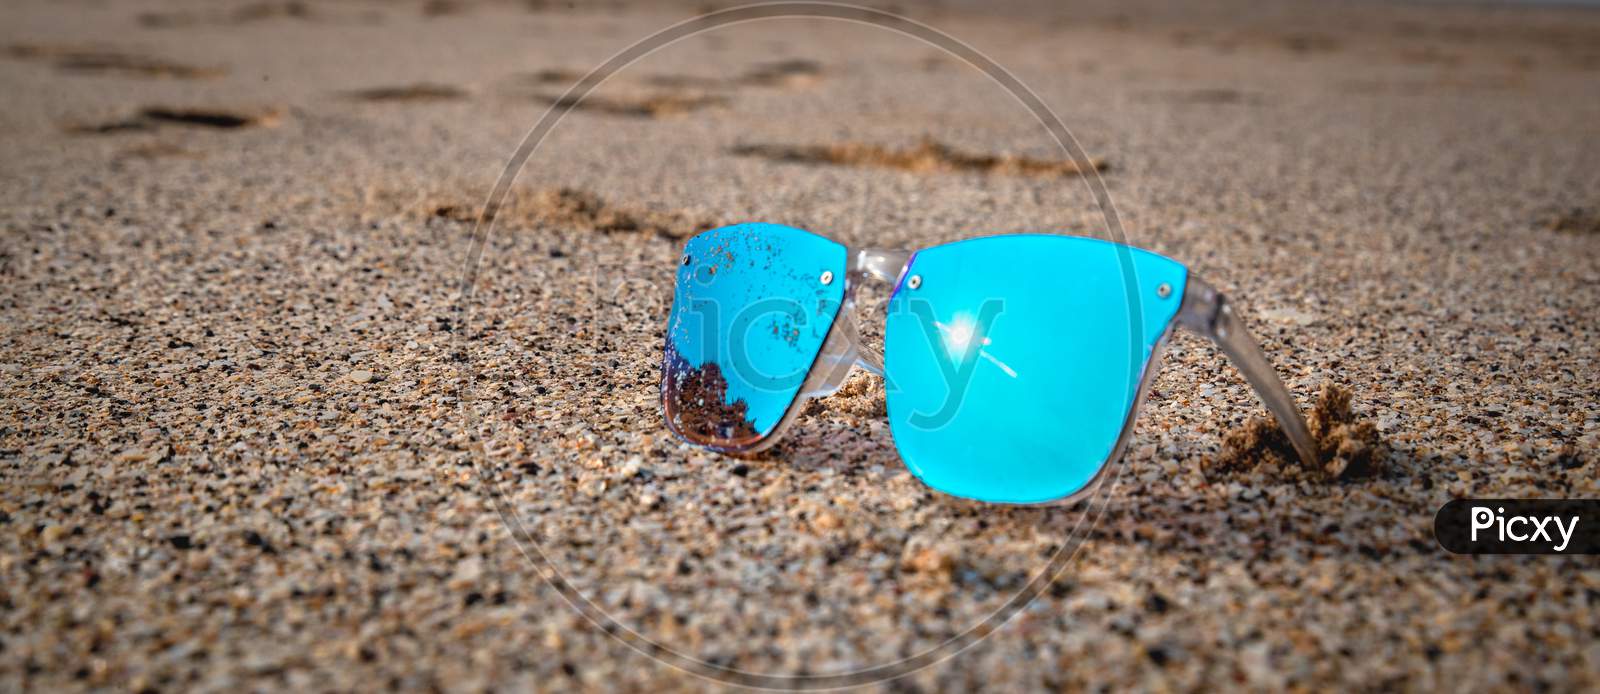 sunglasses on the beach sand